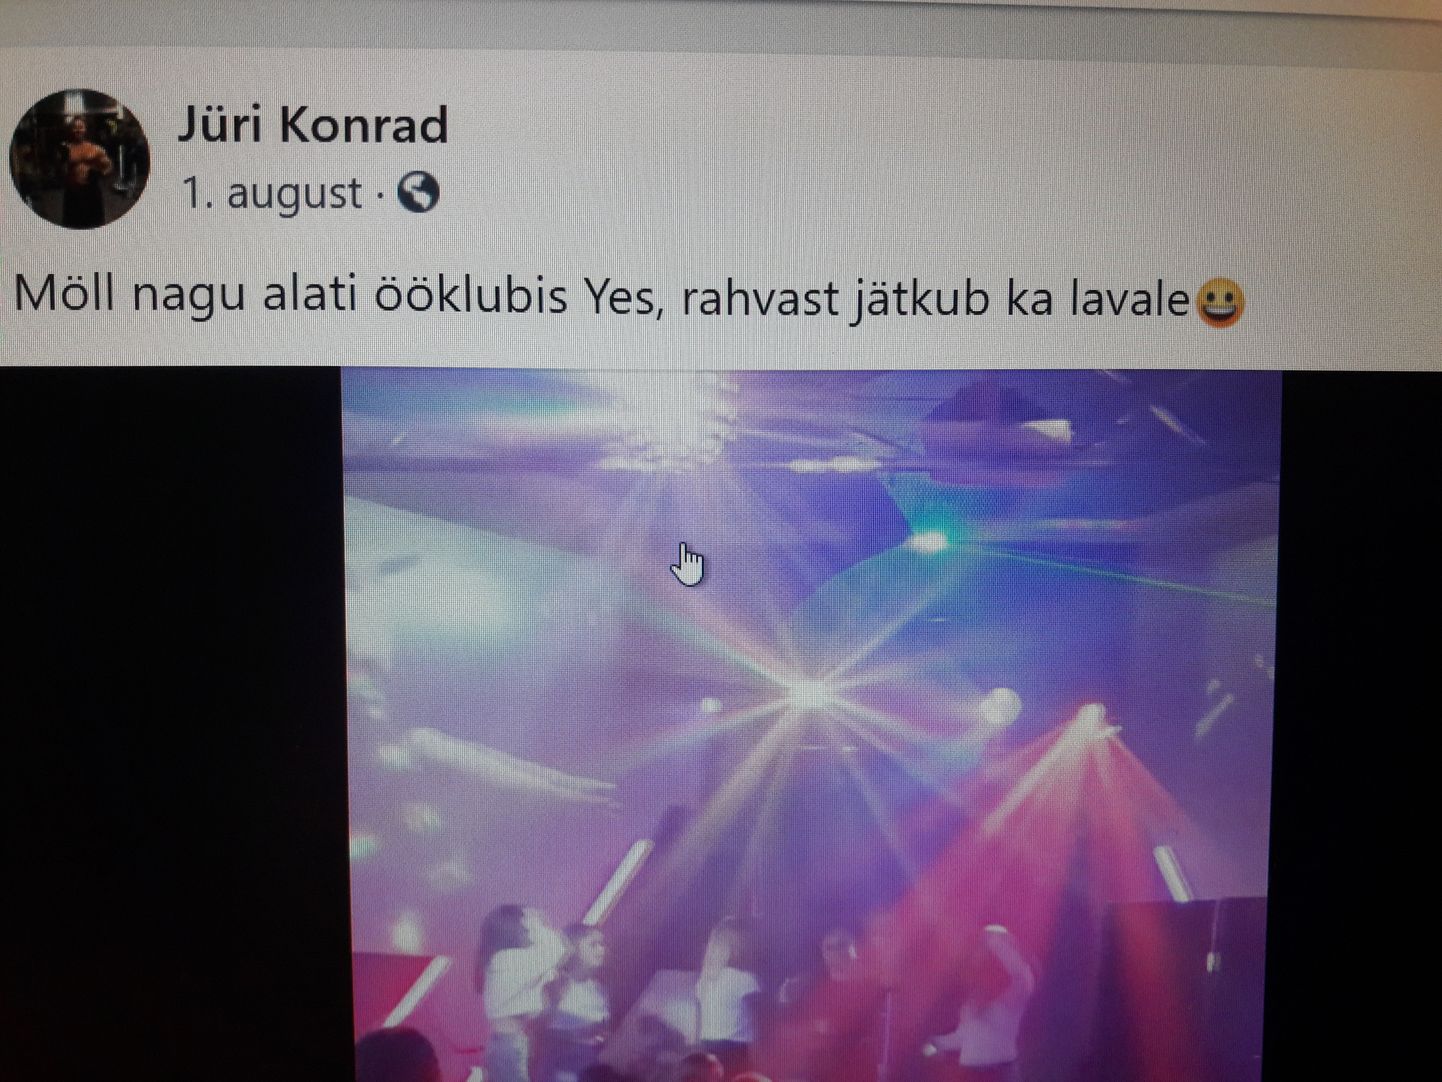 Юри Конрад 1 августа сам разместил в "Фейсбуке" пост, в котором отмечал, что в его ночном клубе идет гулянка и народу хватает также на сцене.